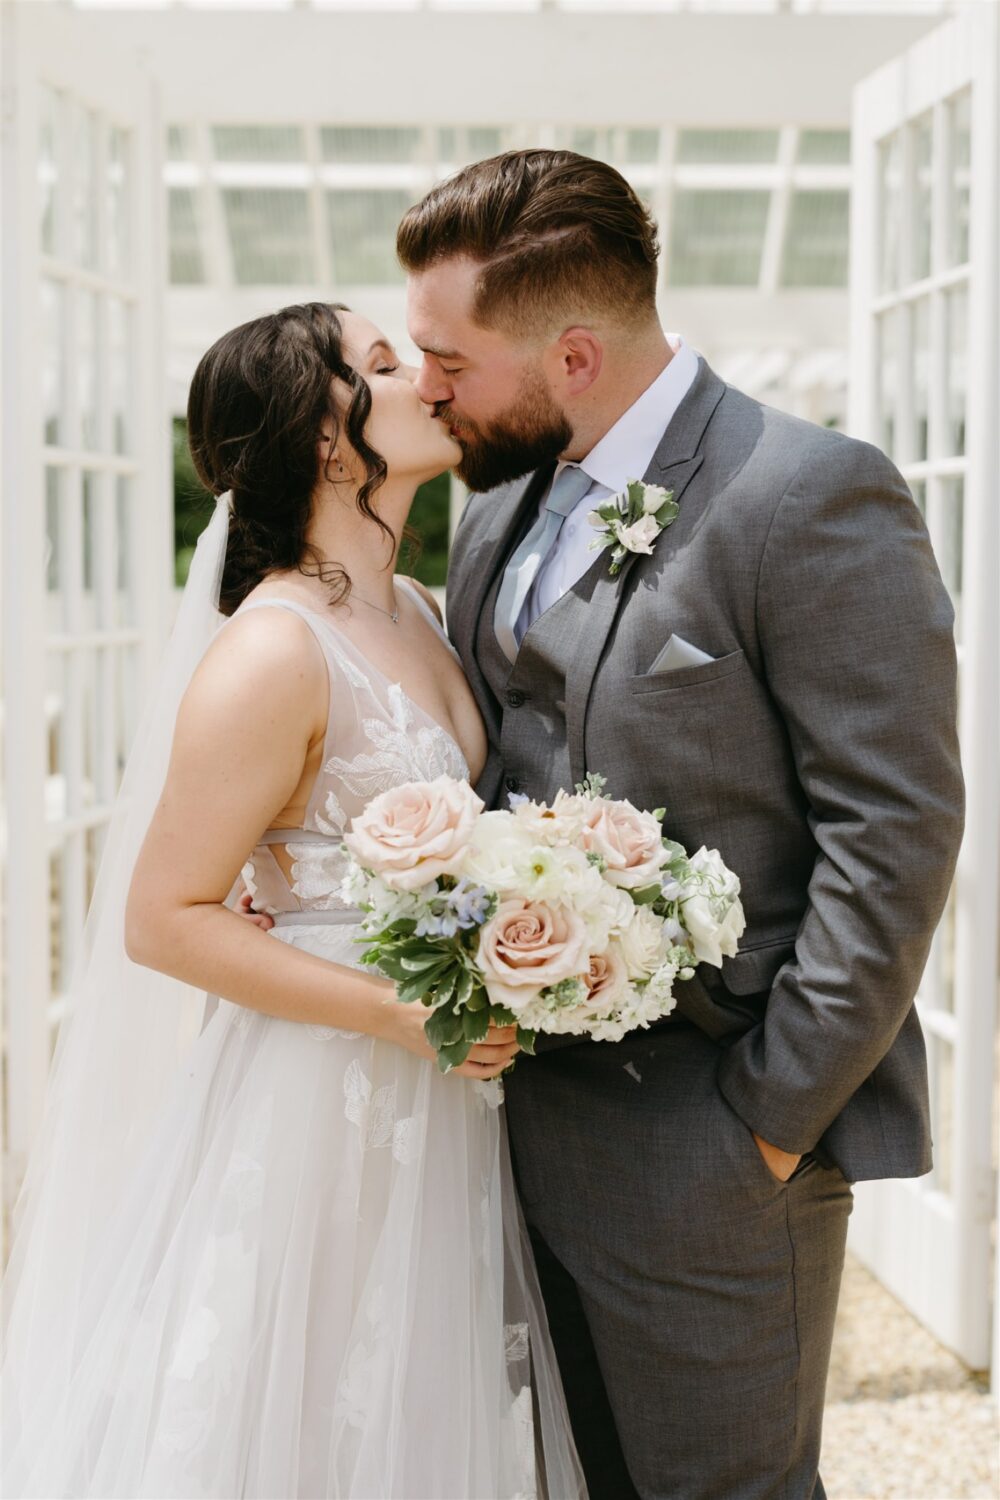 ivy rose barn bride and groom kissing wedding details florals